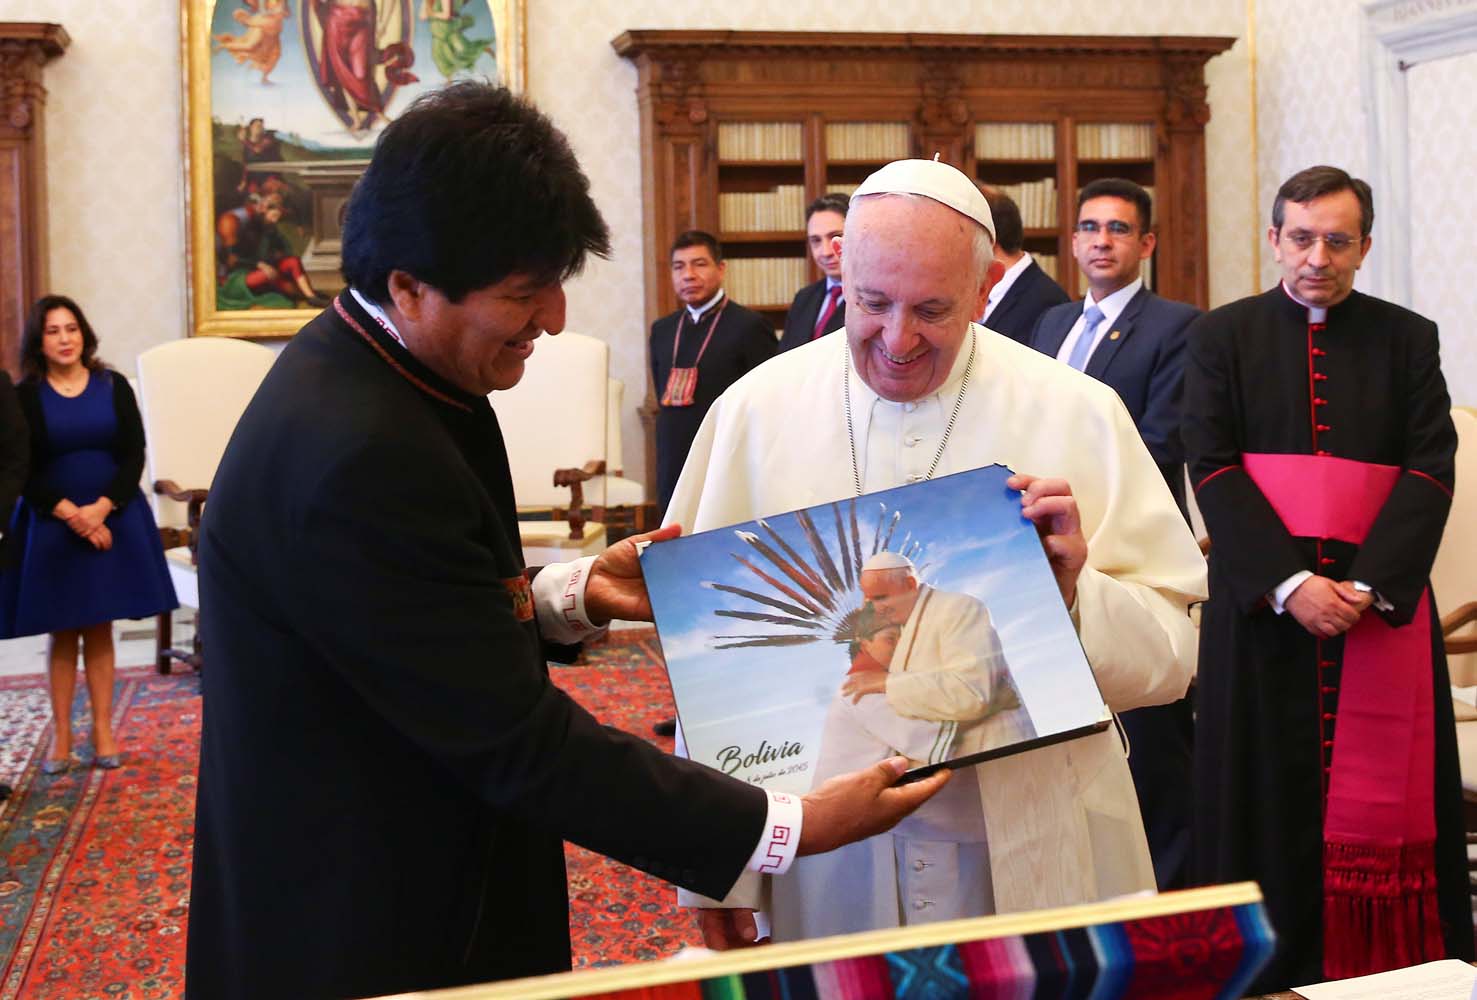 El Papa recibió a Evo Morales y le animó a trabajar por la solidaridad y paz (Fotos)